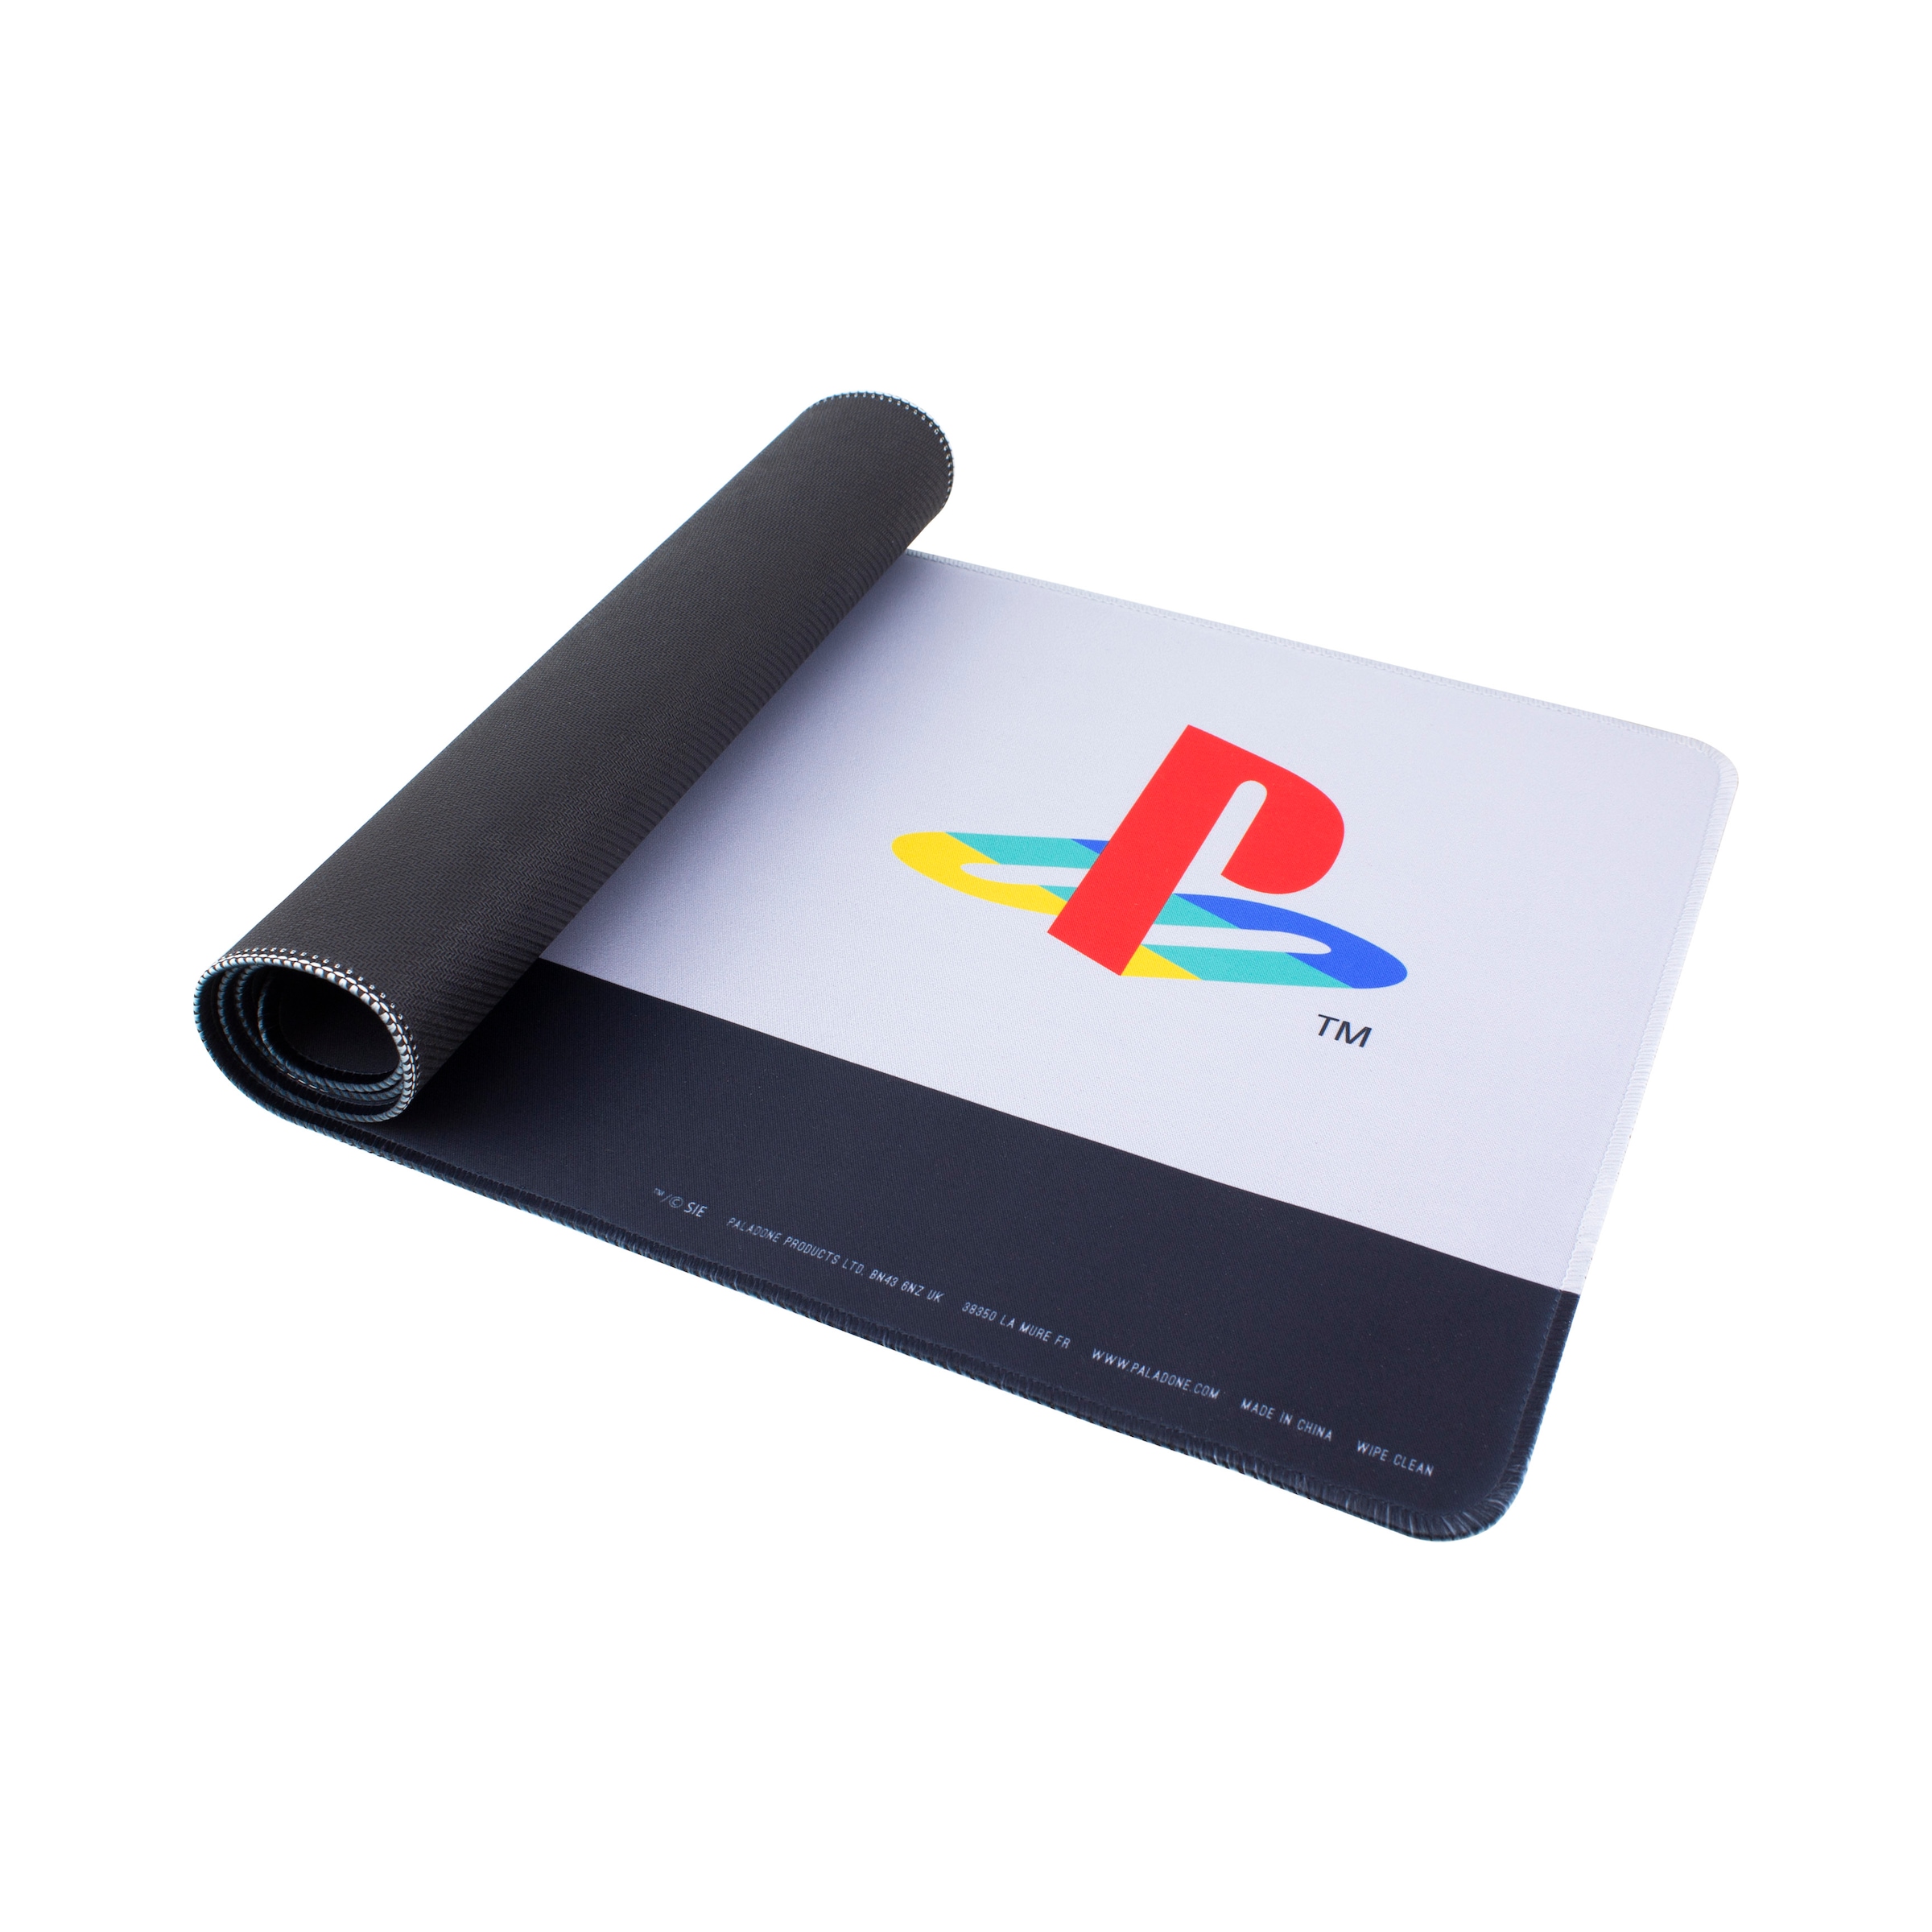 Mauspad »Playstation Logo XL Mauspad«